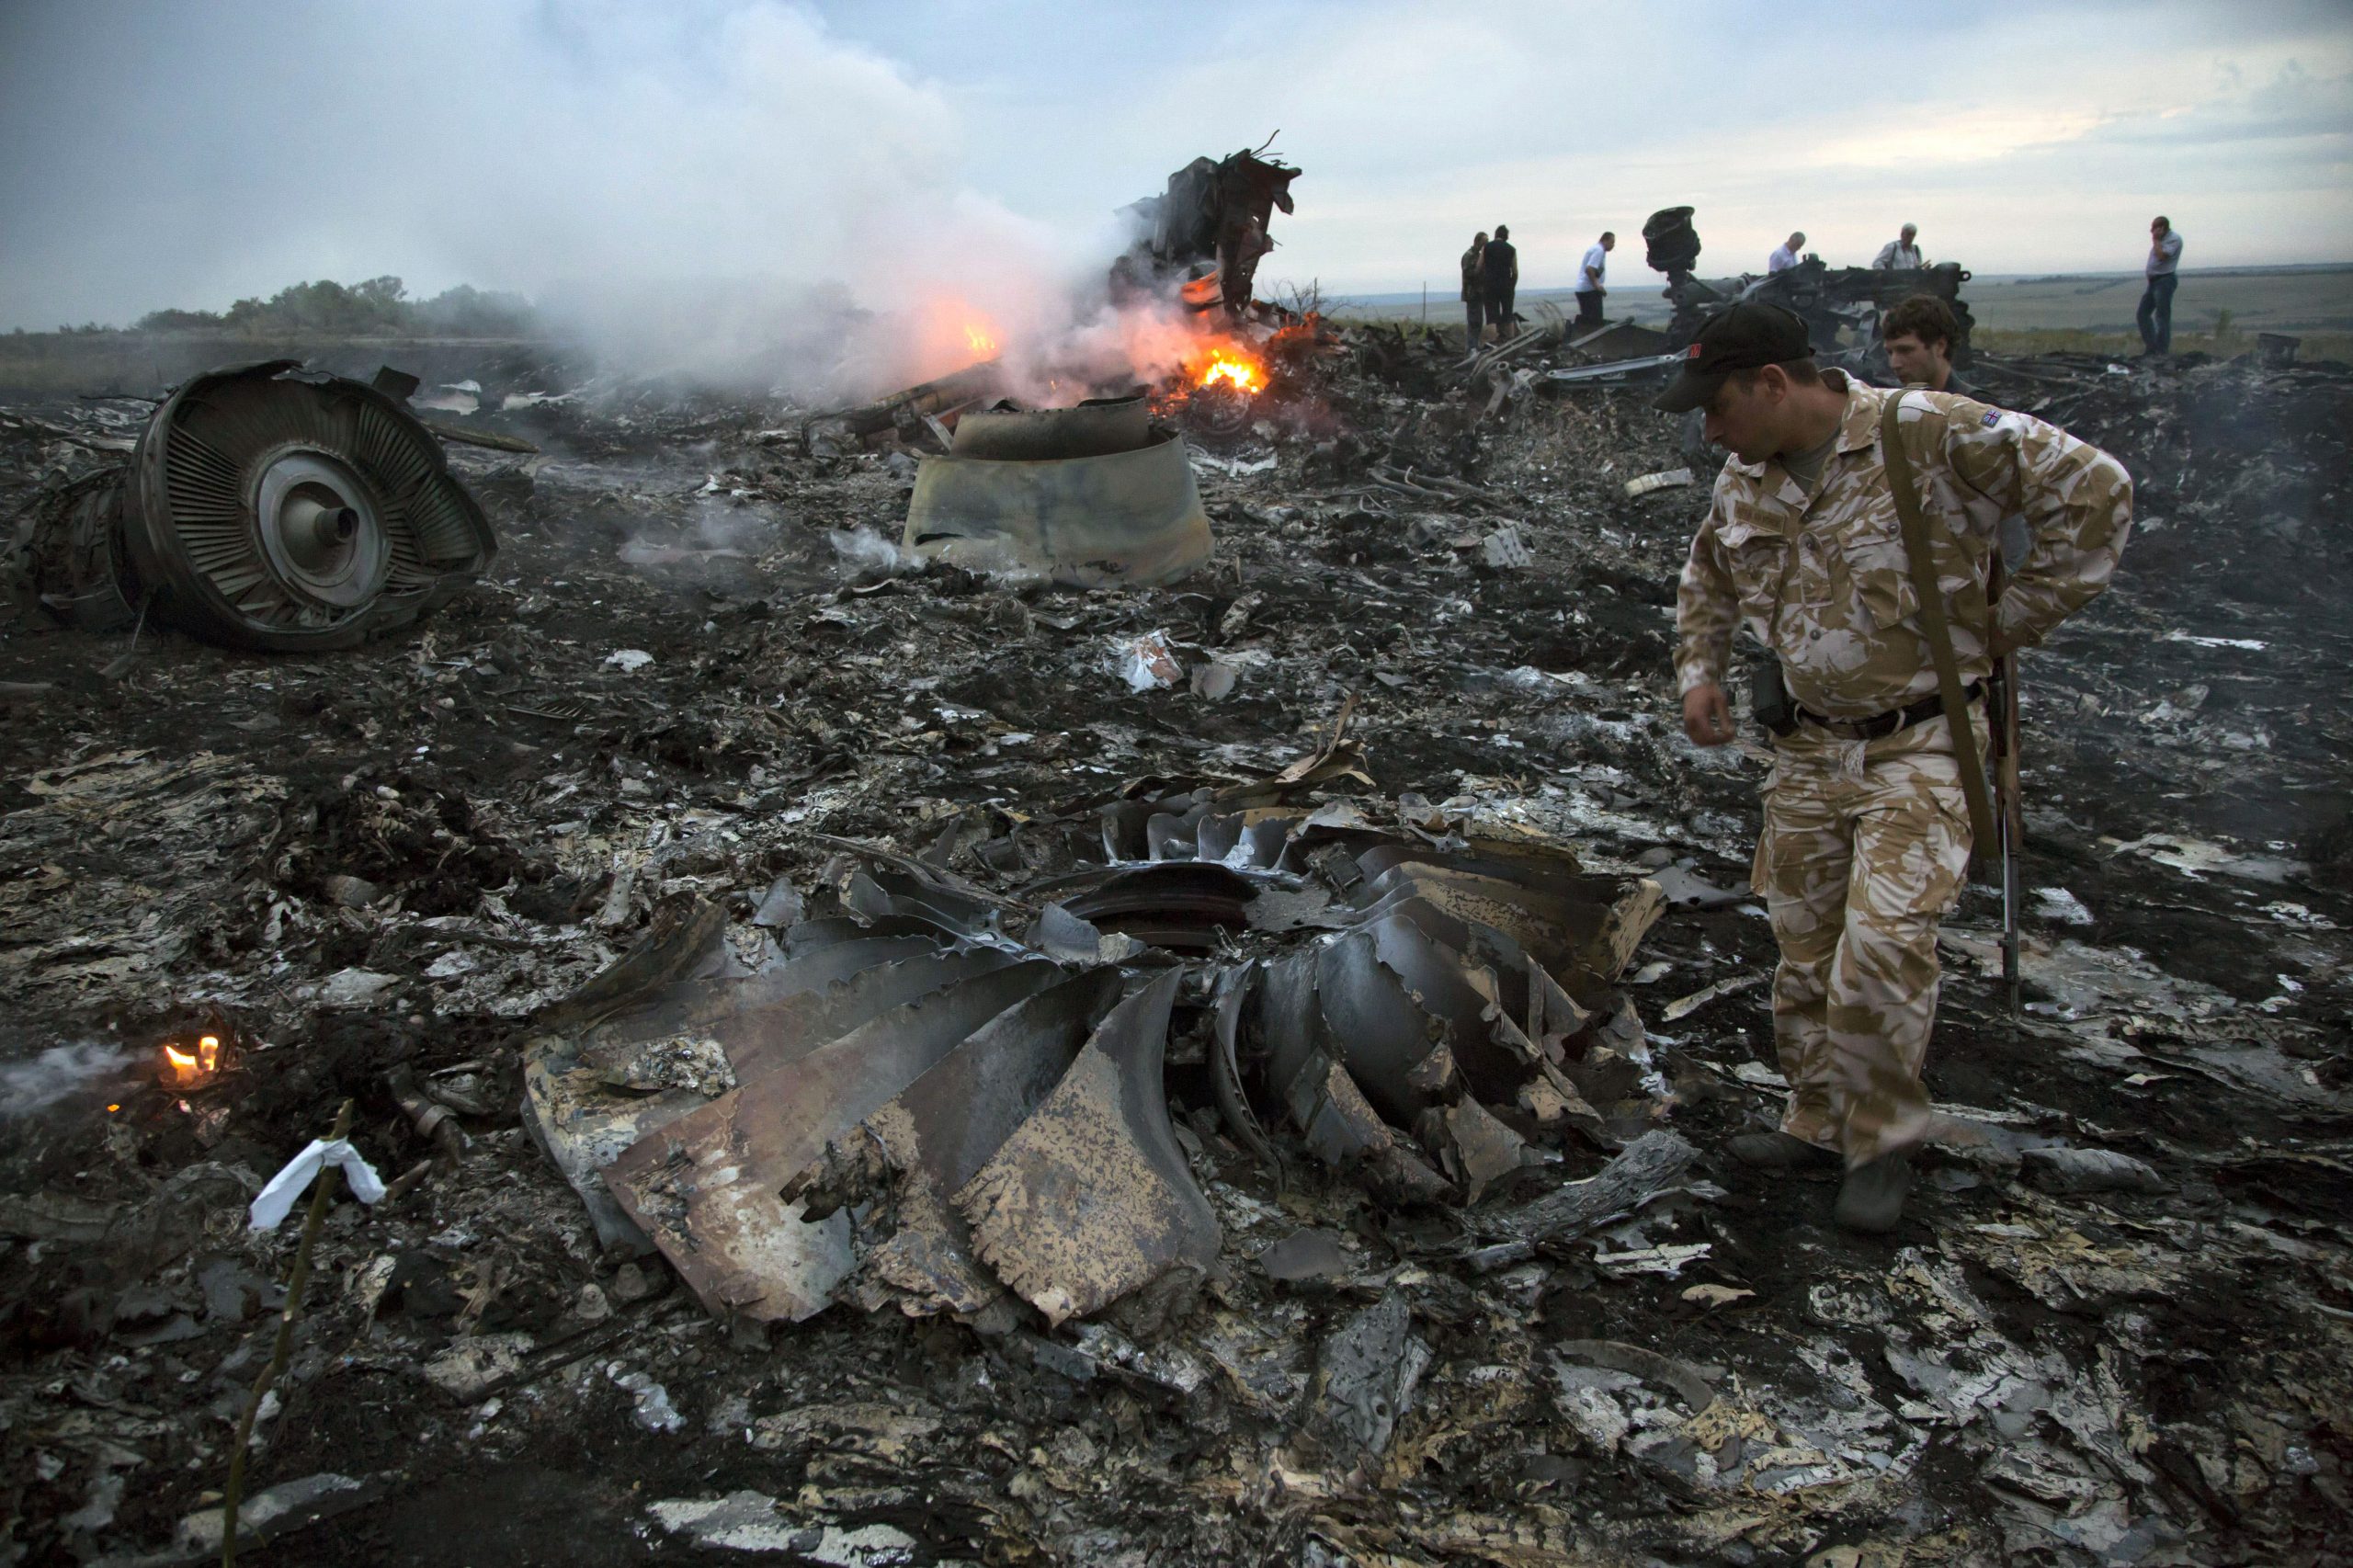 马航MH17遭击落　调查指有“强烈迹象”普汀批准供应肇事导弹